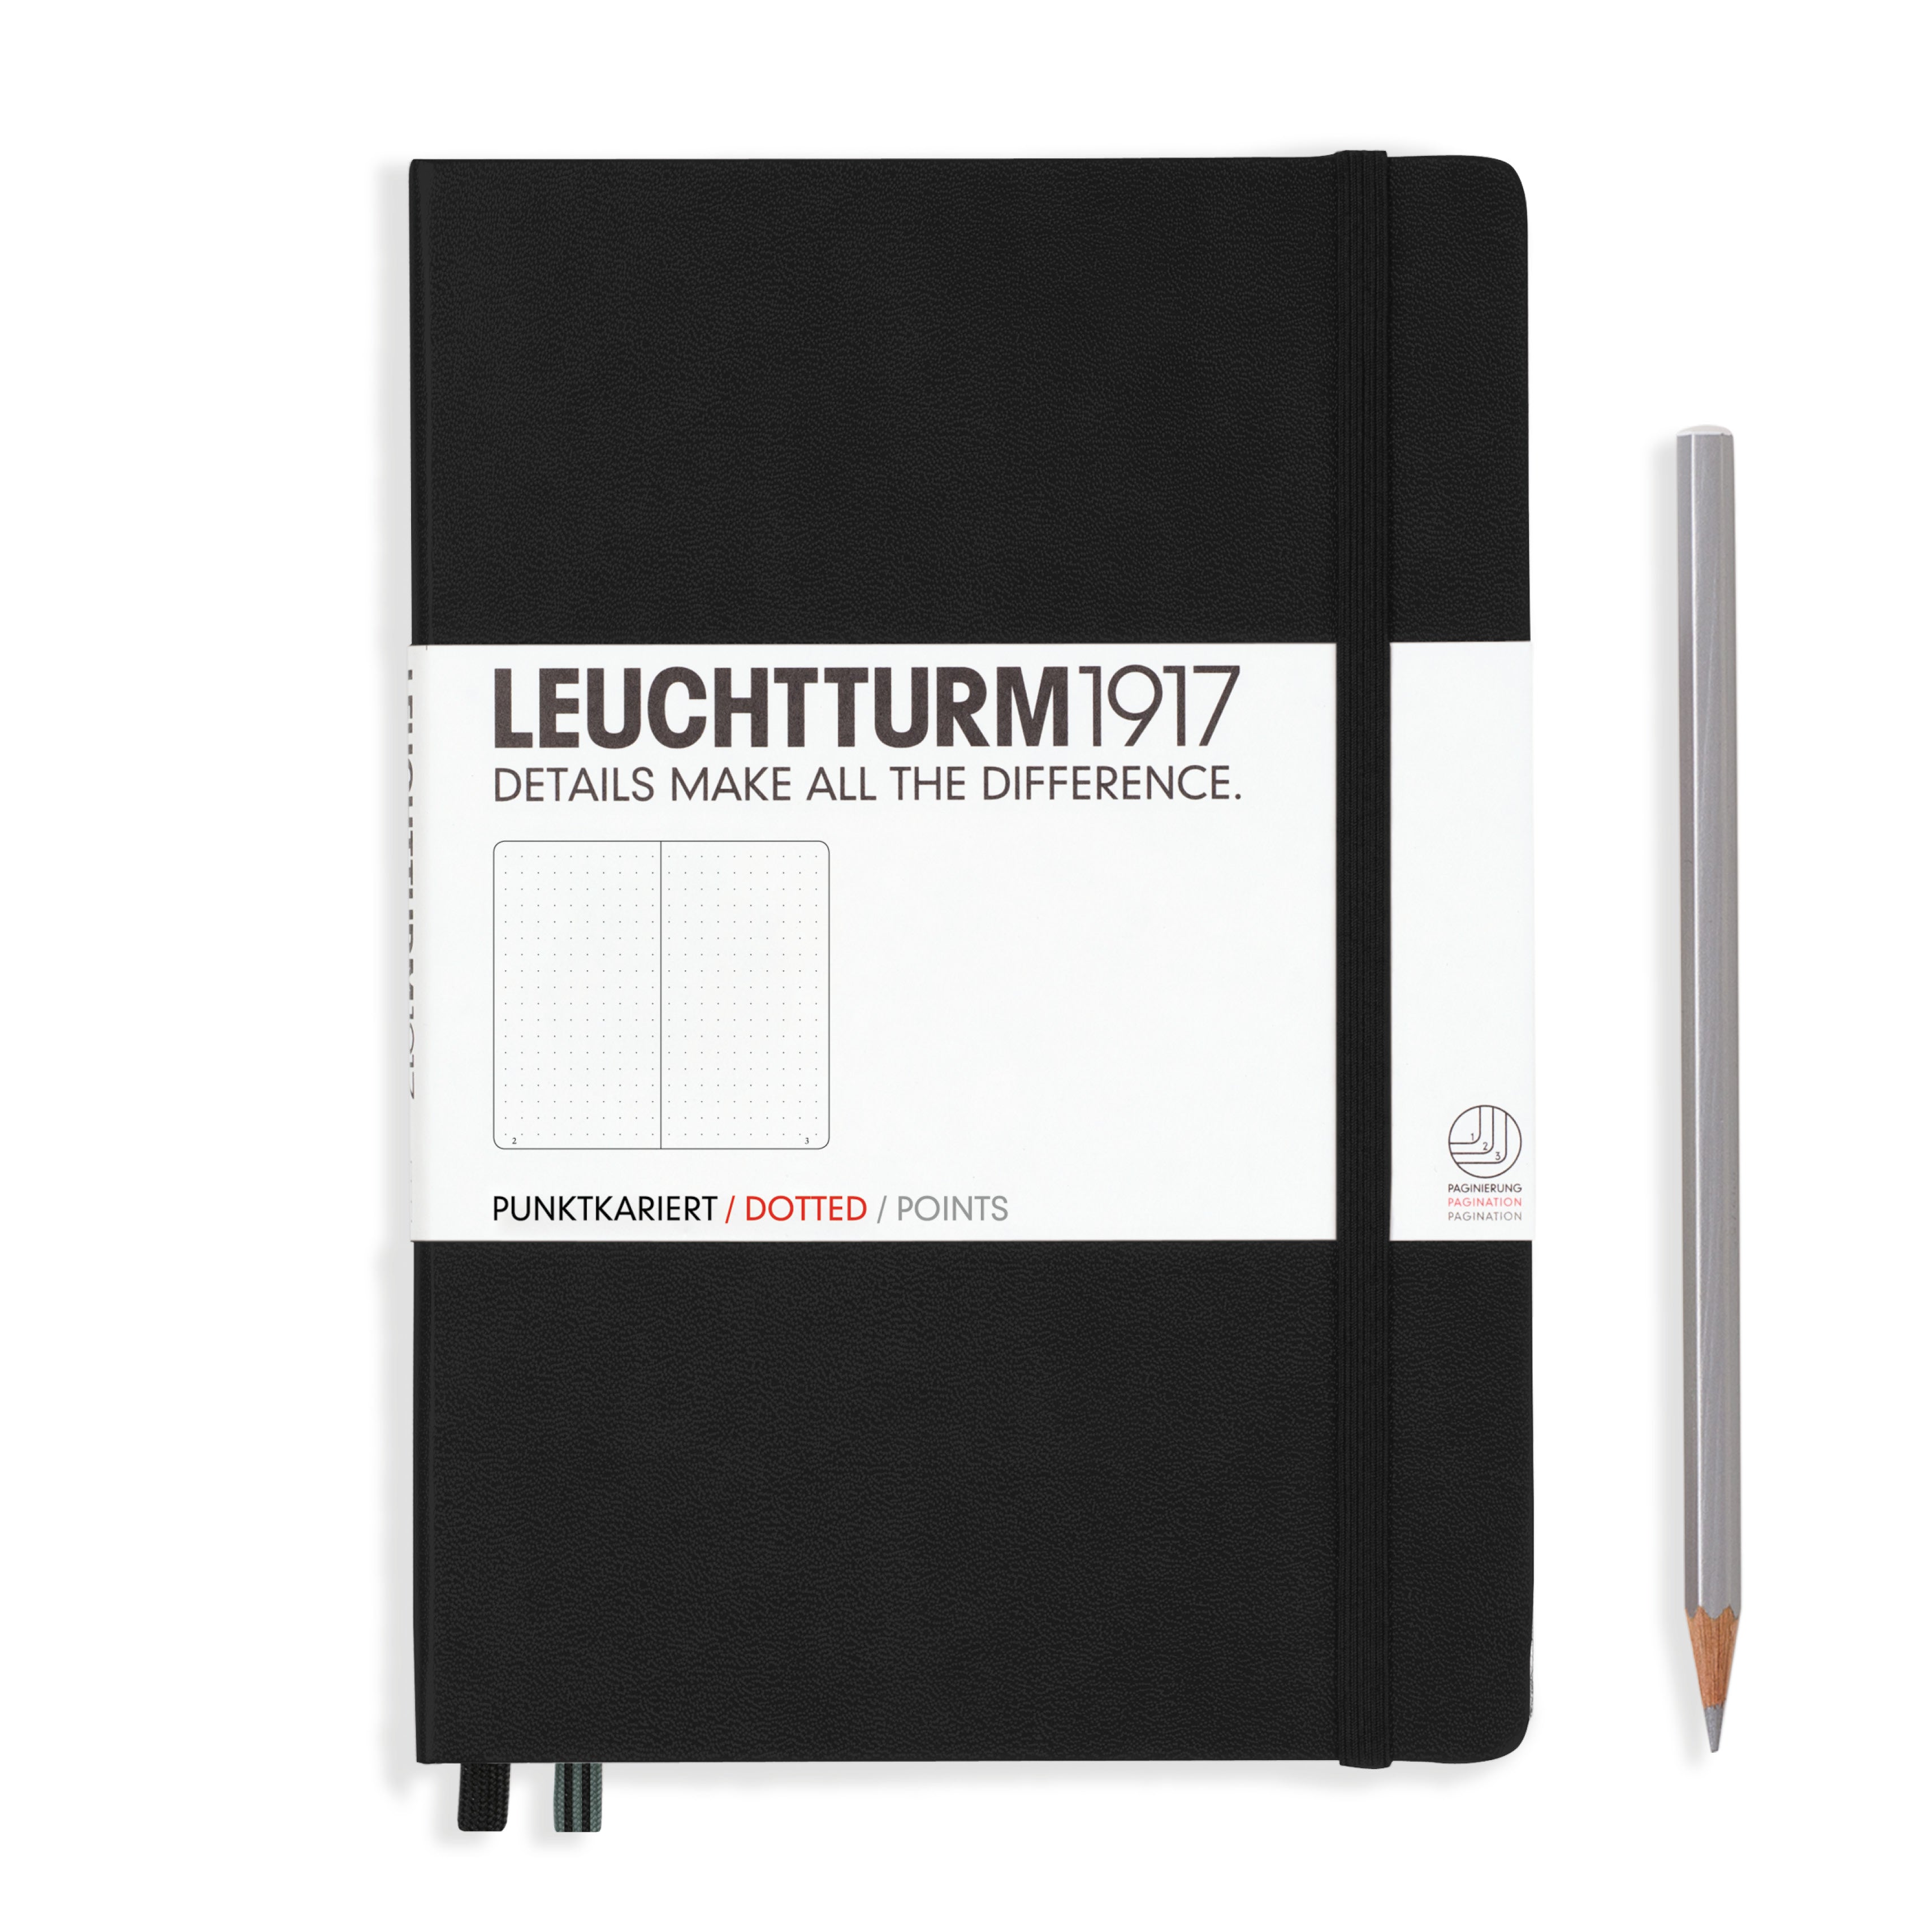 Leuchtturm medium dotted notebook (A5) hardcover